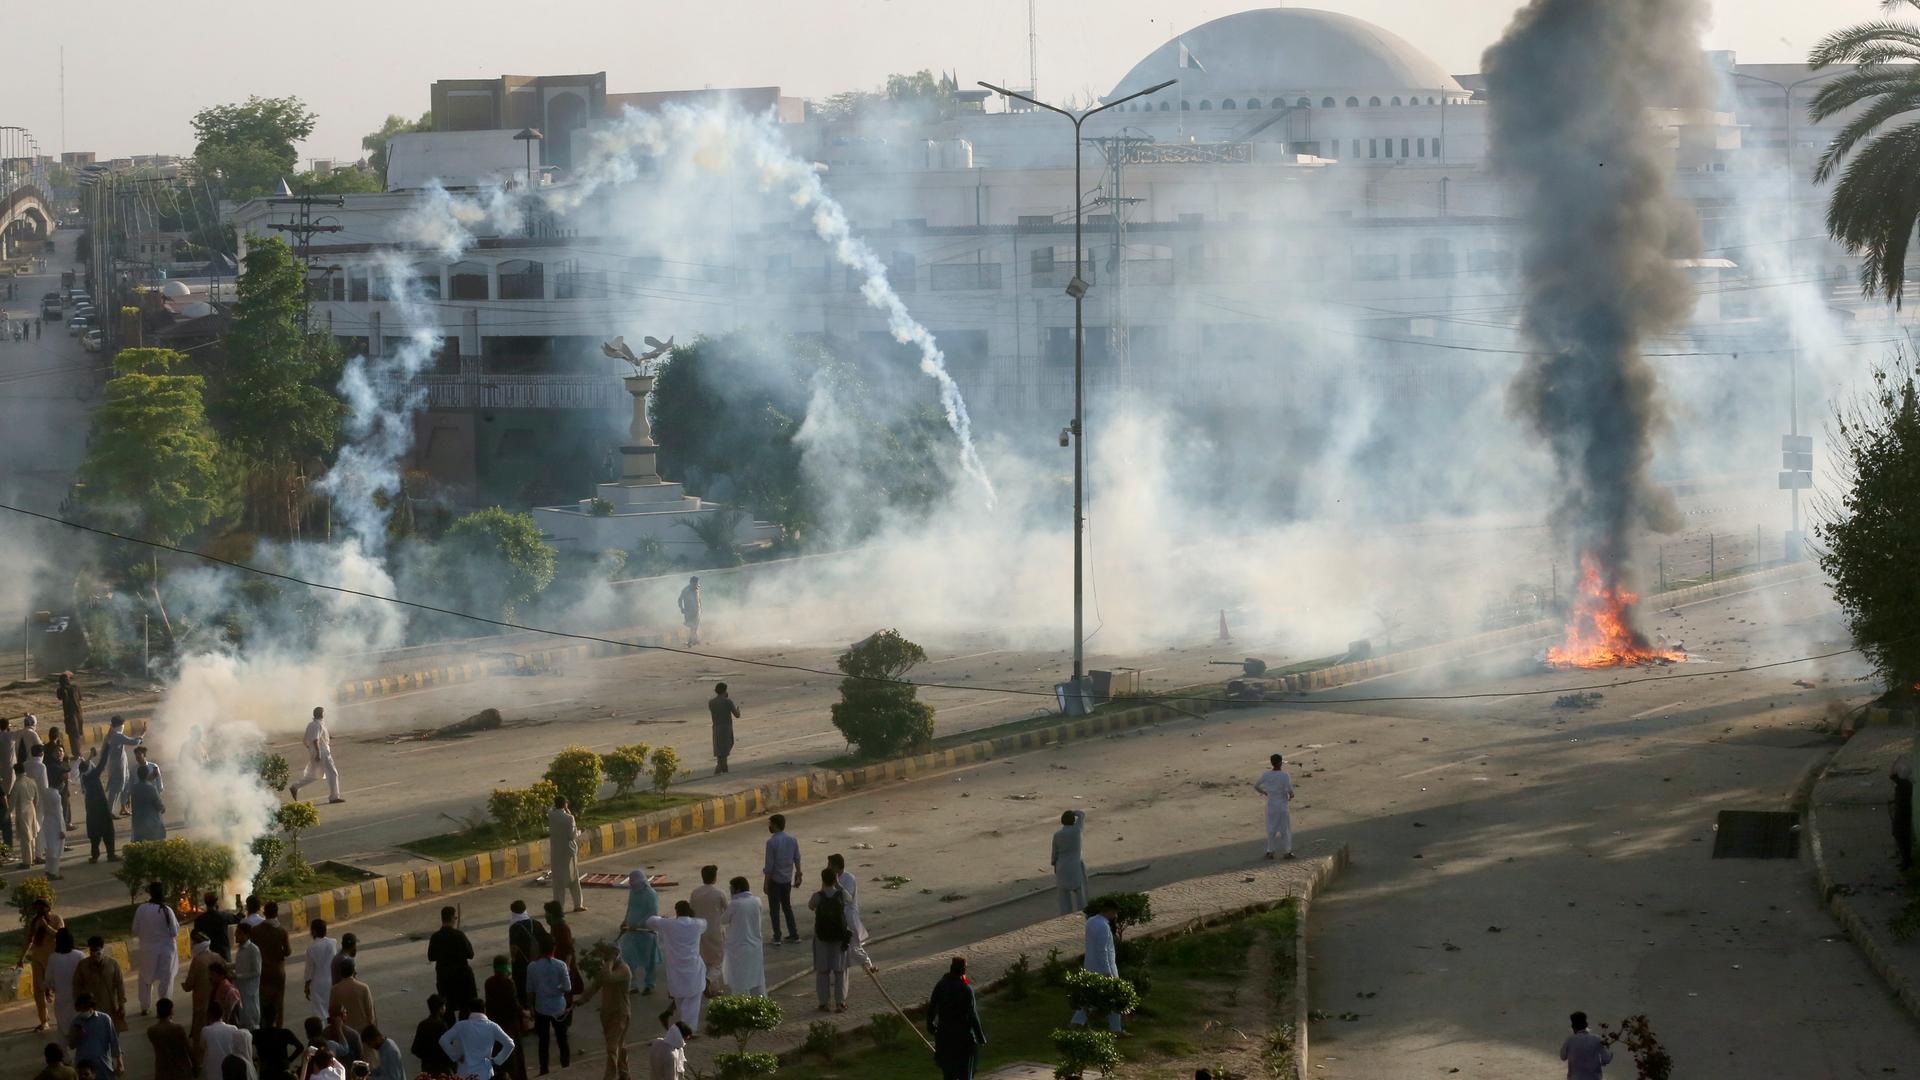 Peschawar: Die Polizei setzt Tränengas ein, um Anhänger des ehemaligen pakistanischen Premierministers Khan zu vertreiben, die gegen dessen Verhaftung protestieren.